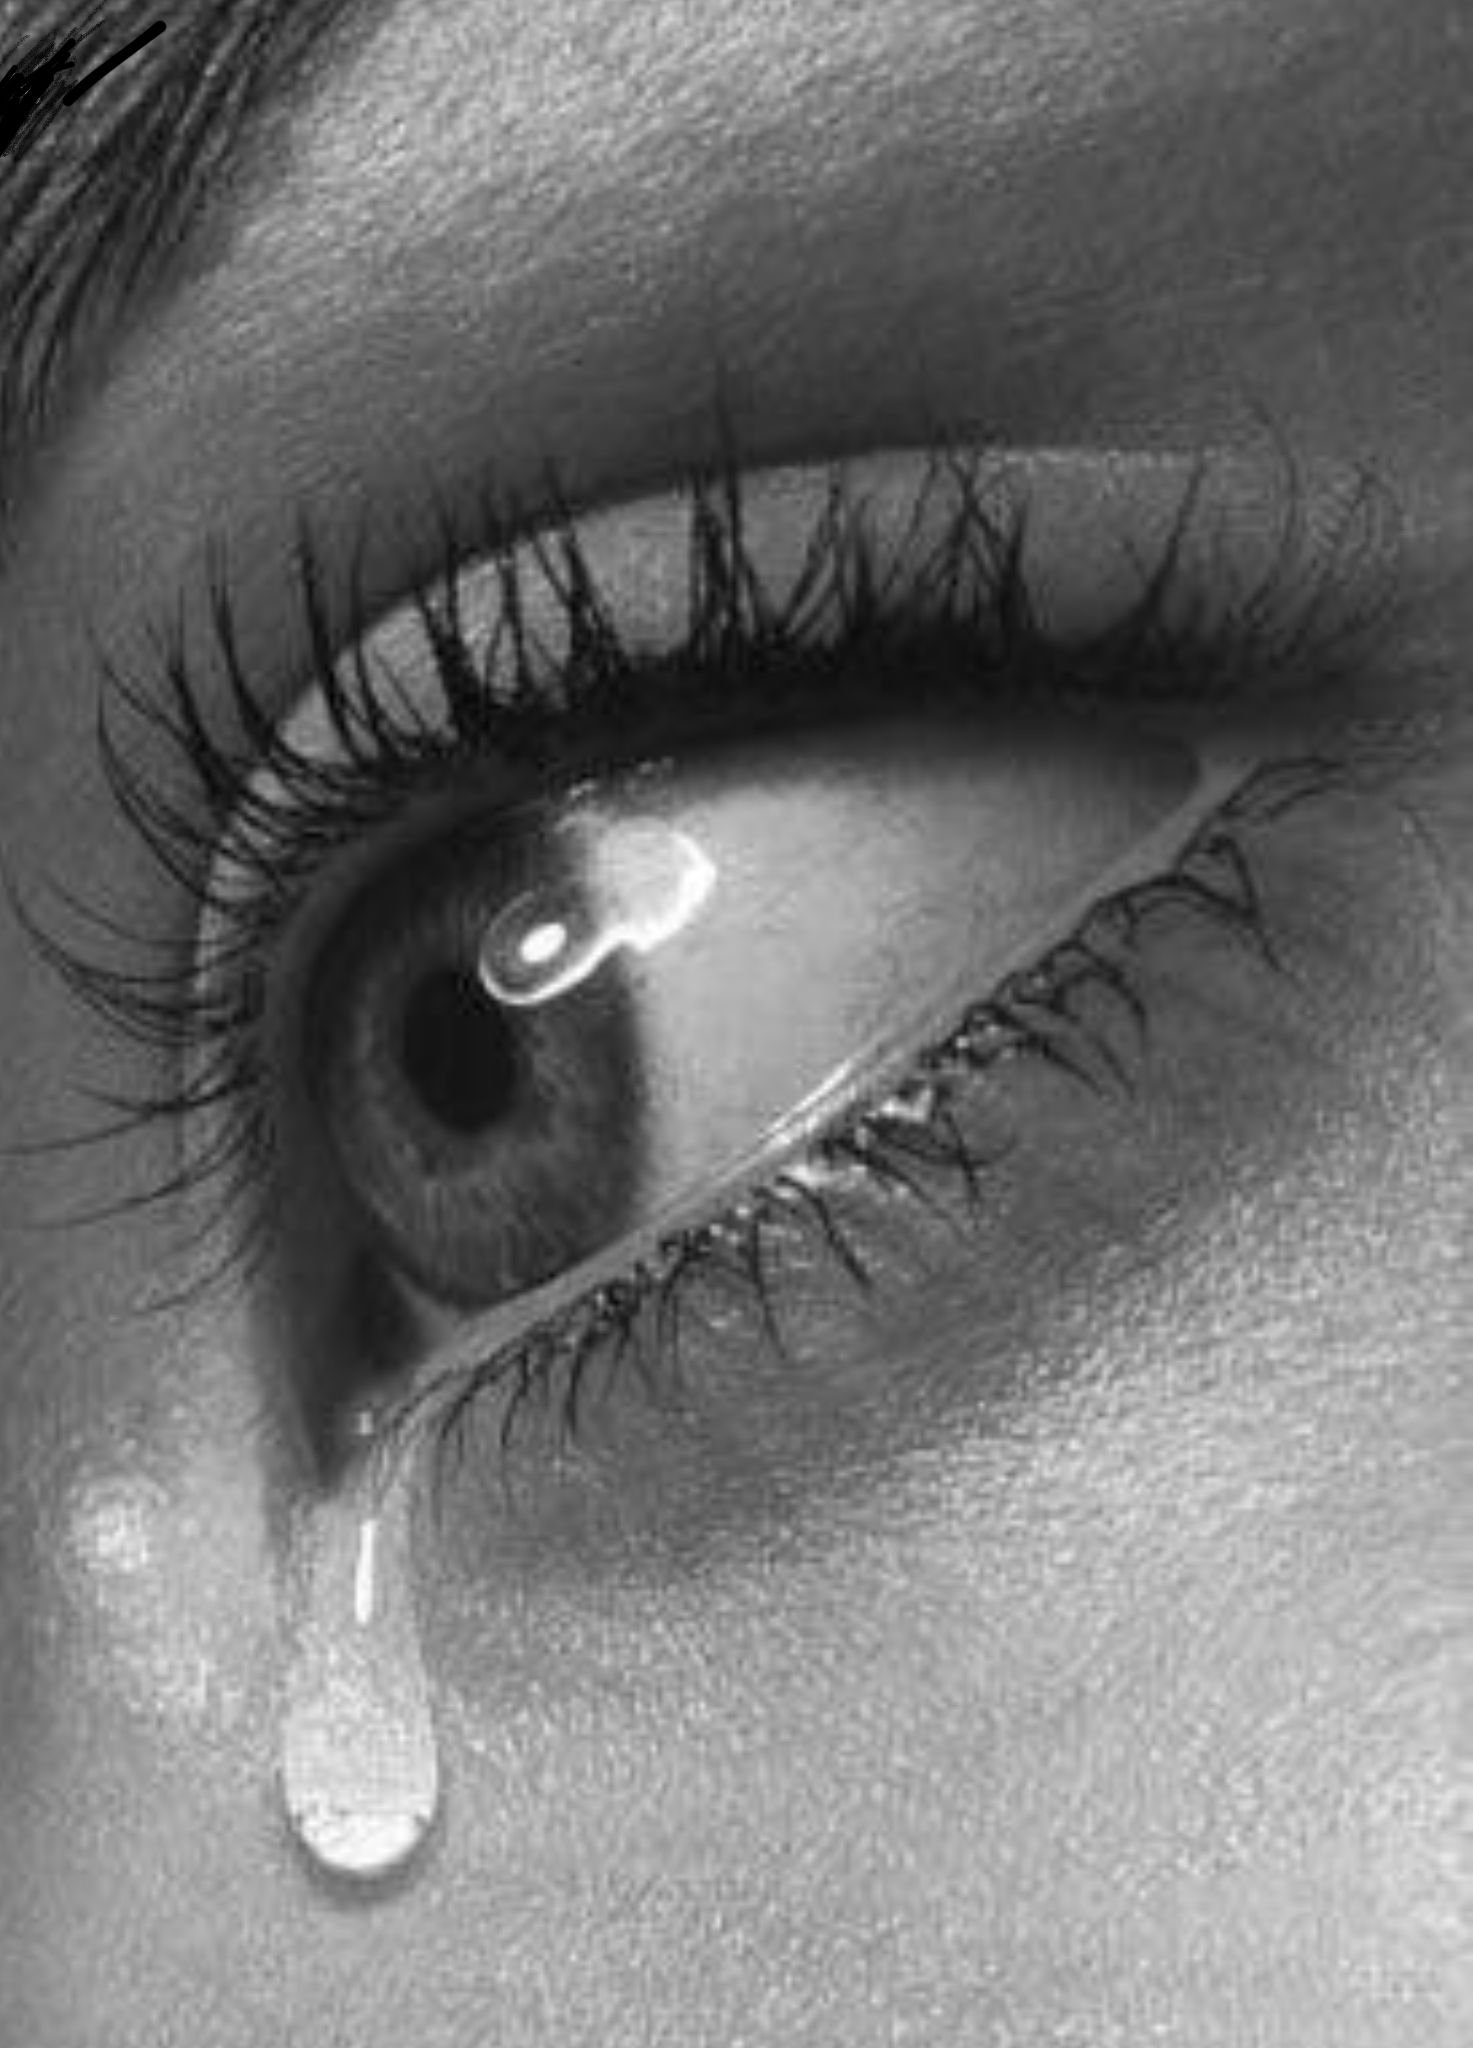 Слезь глаза. Слезы. Плачущий глаз. Девушка со слезами на глазах. Глаз со слезой.